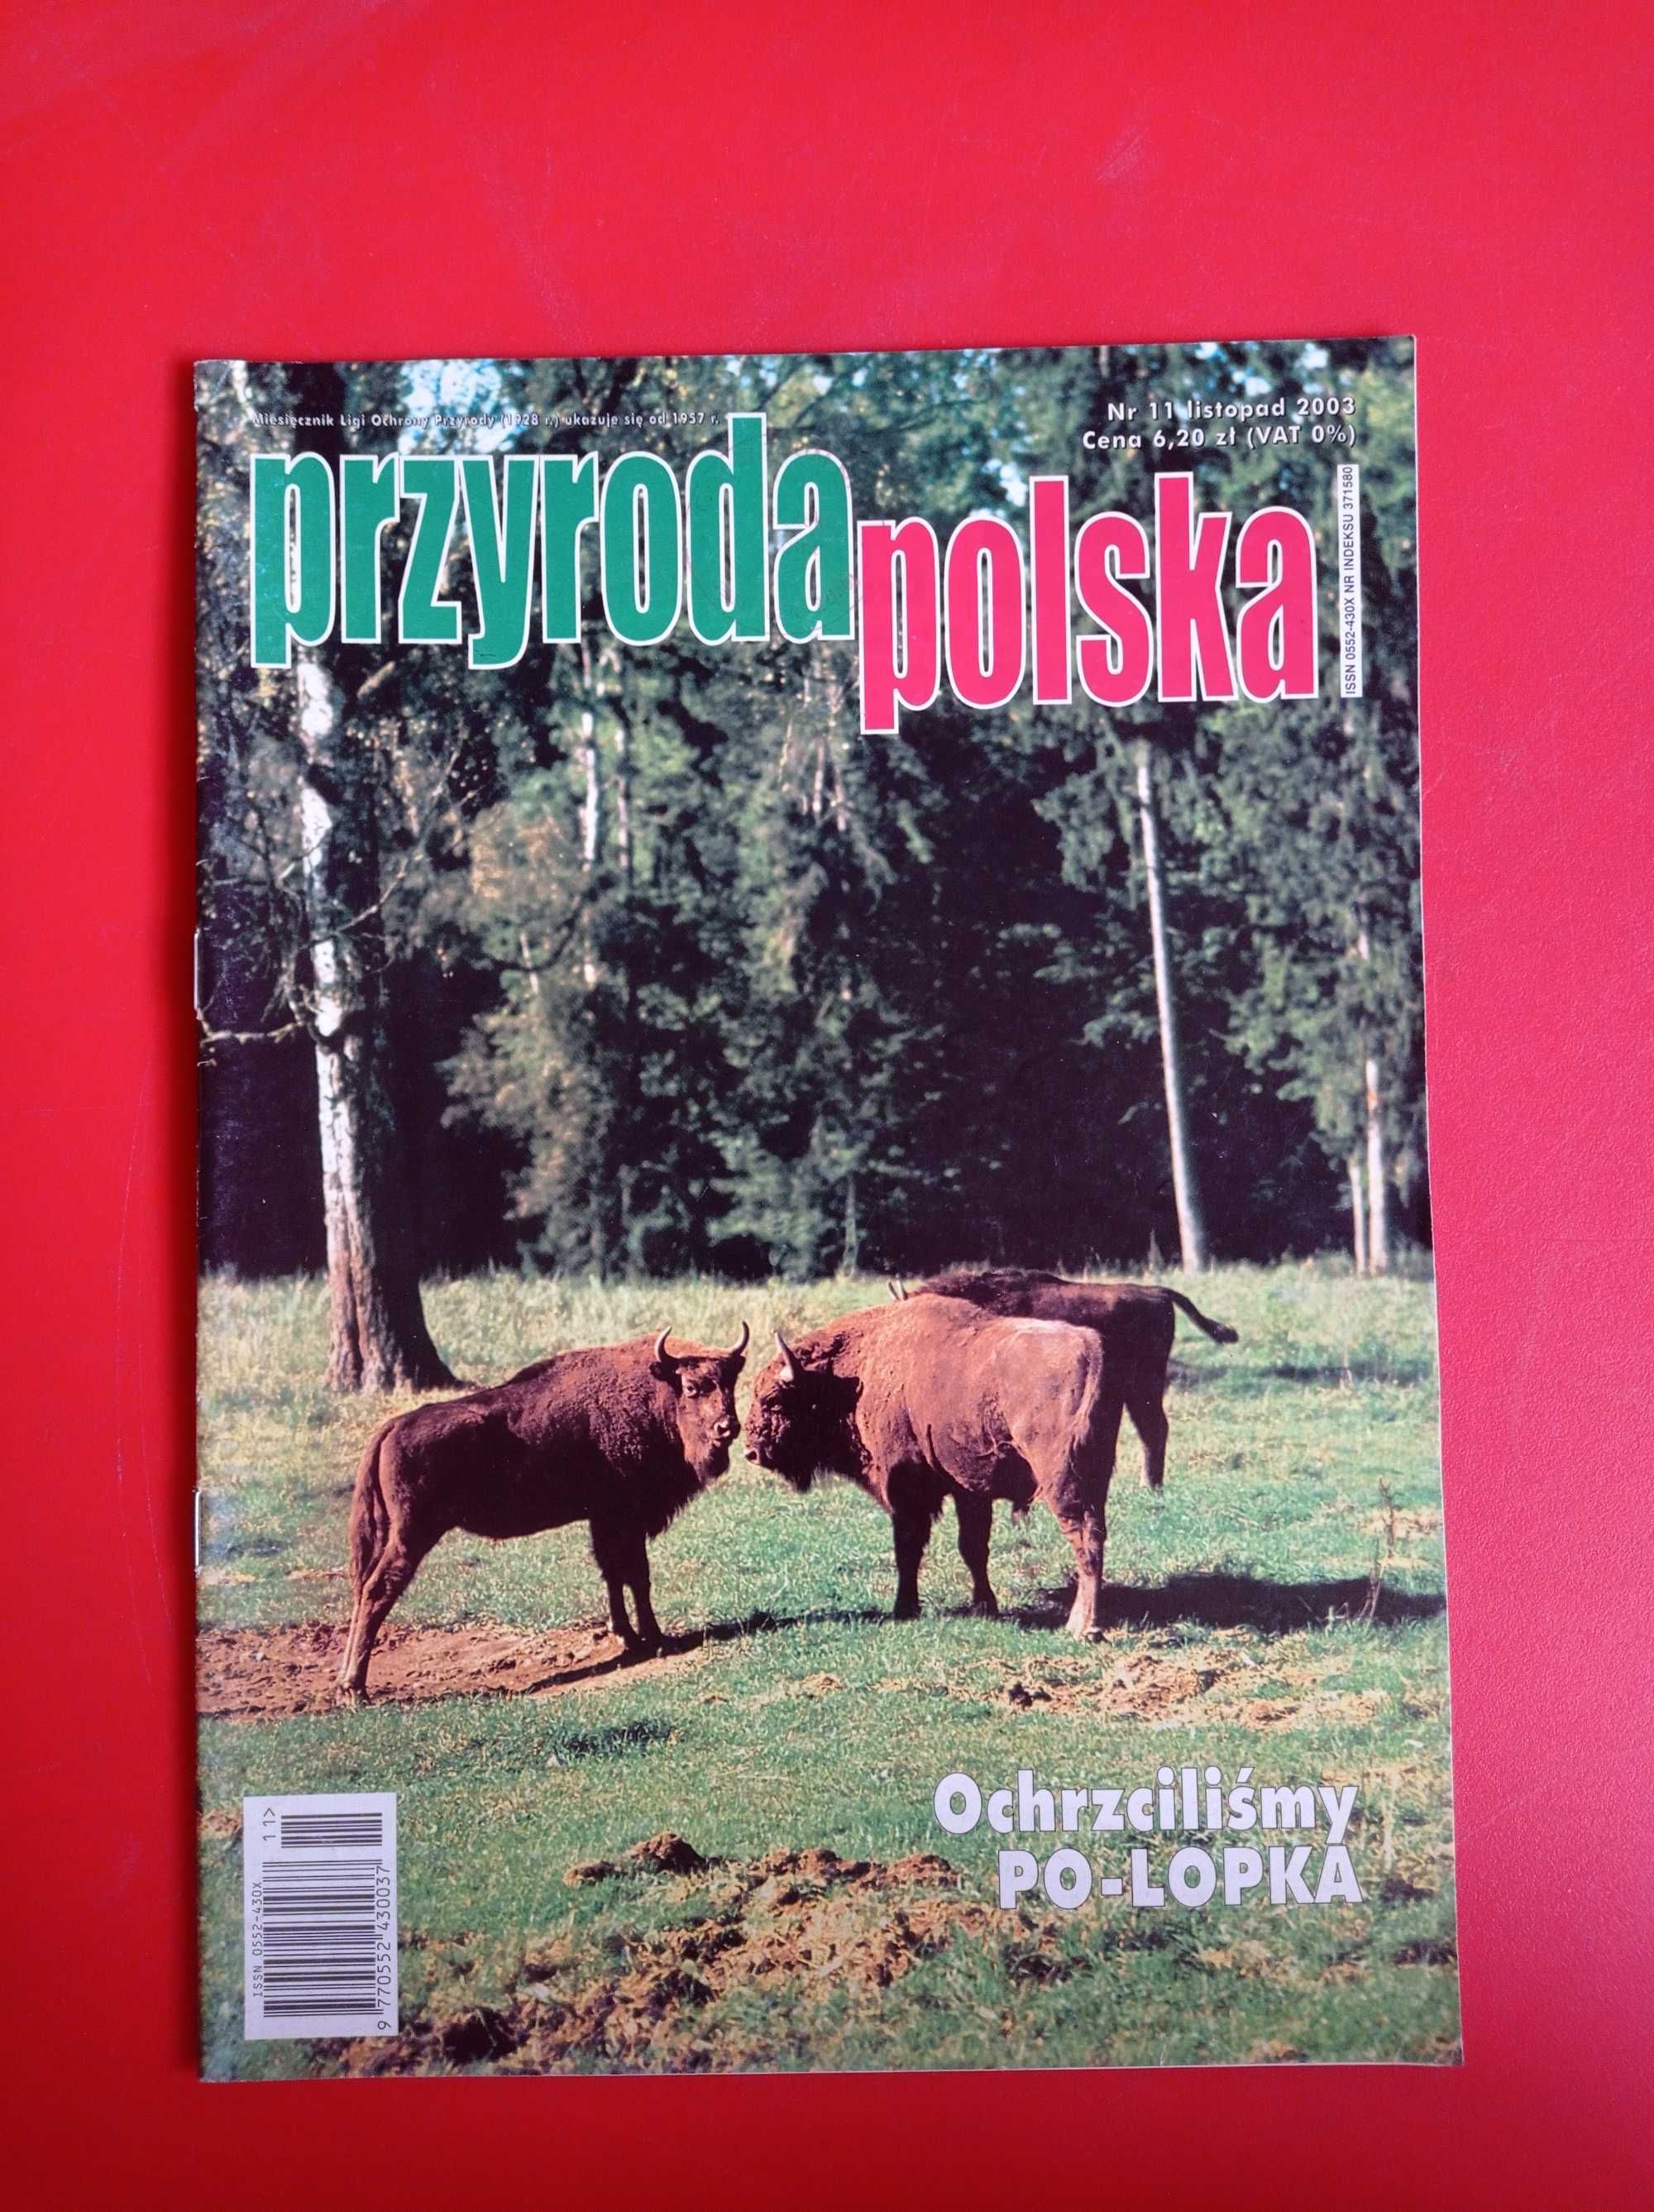 Przyroda polska nr 11/2003, listopad 2003